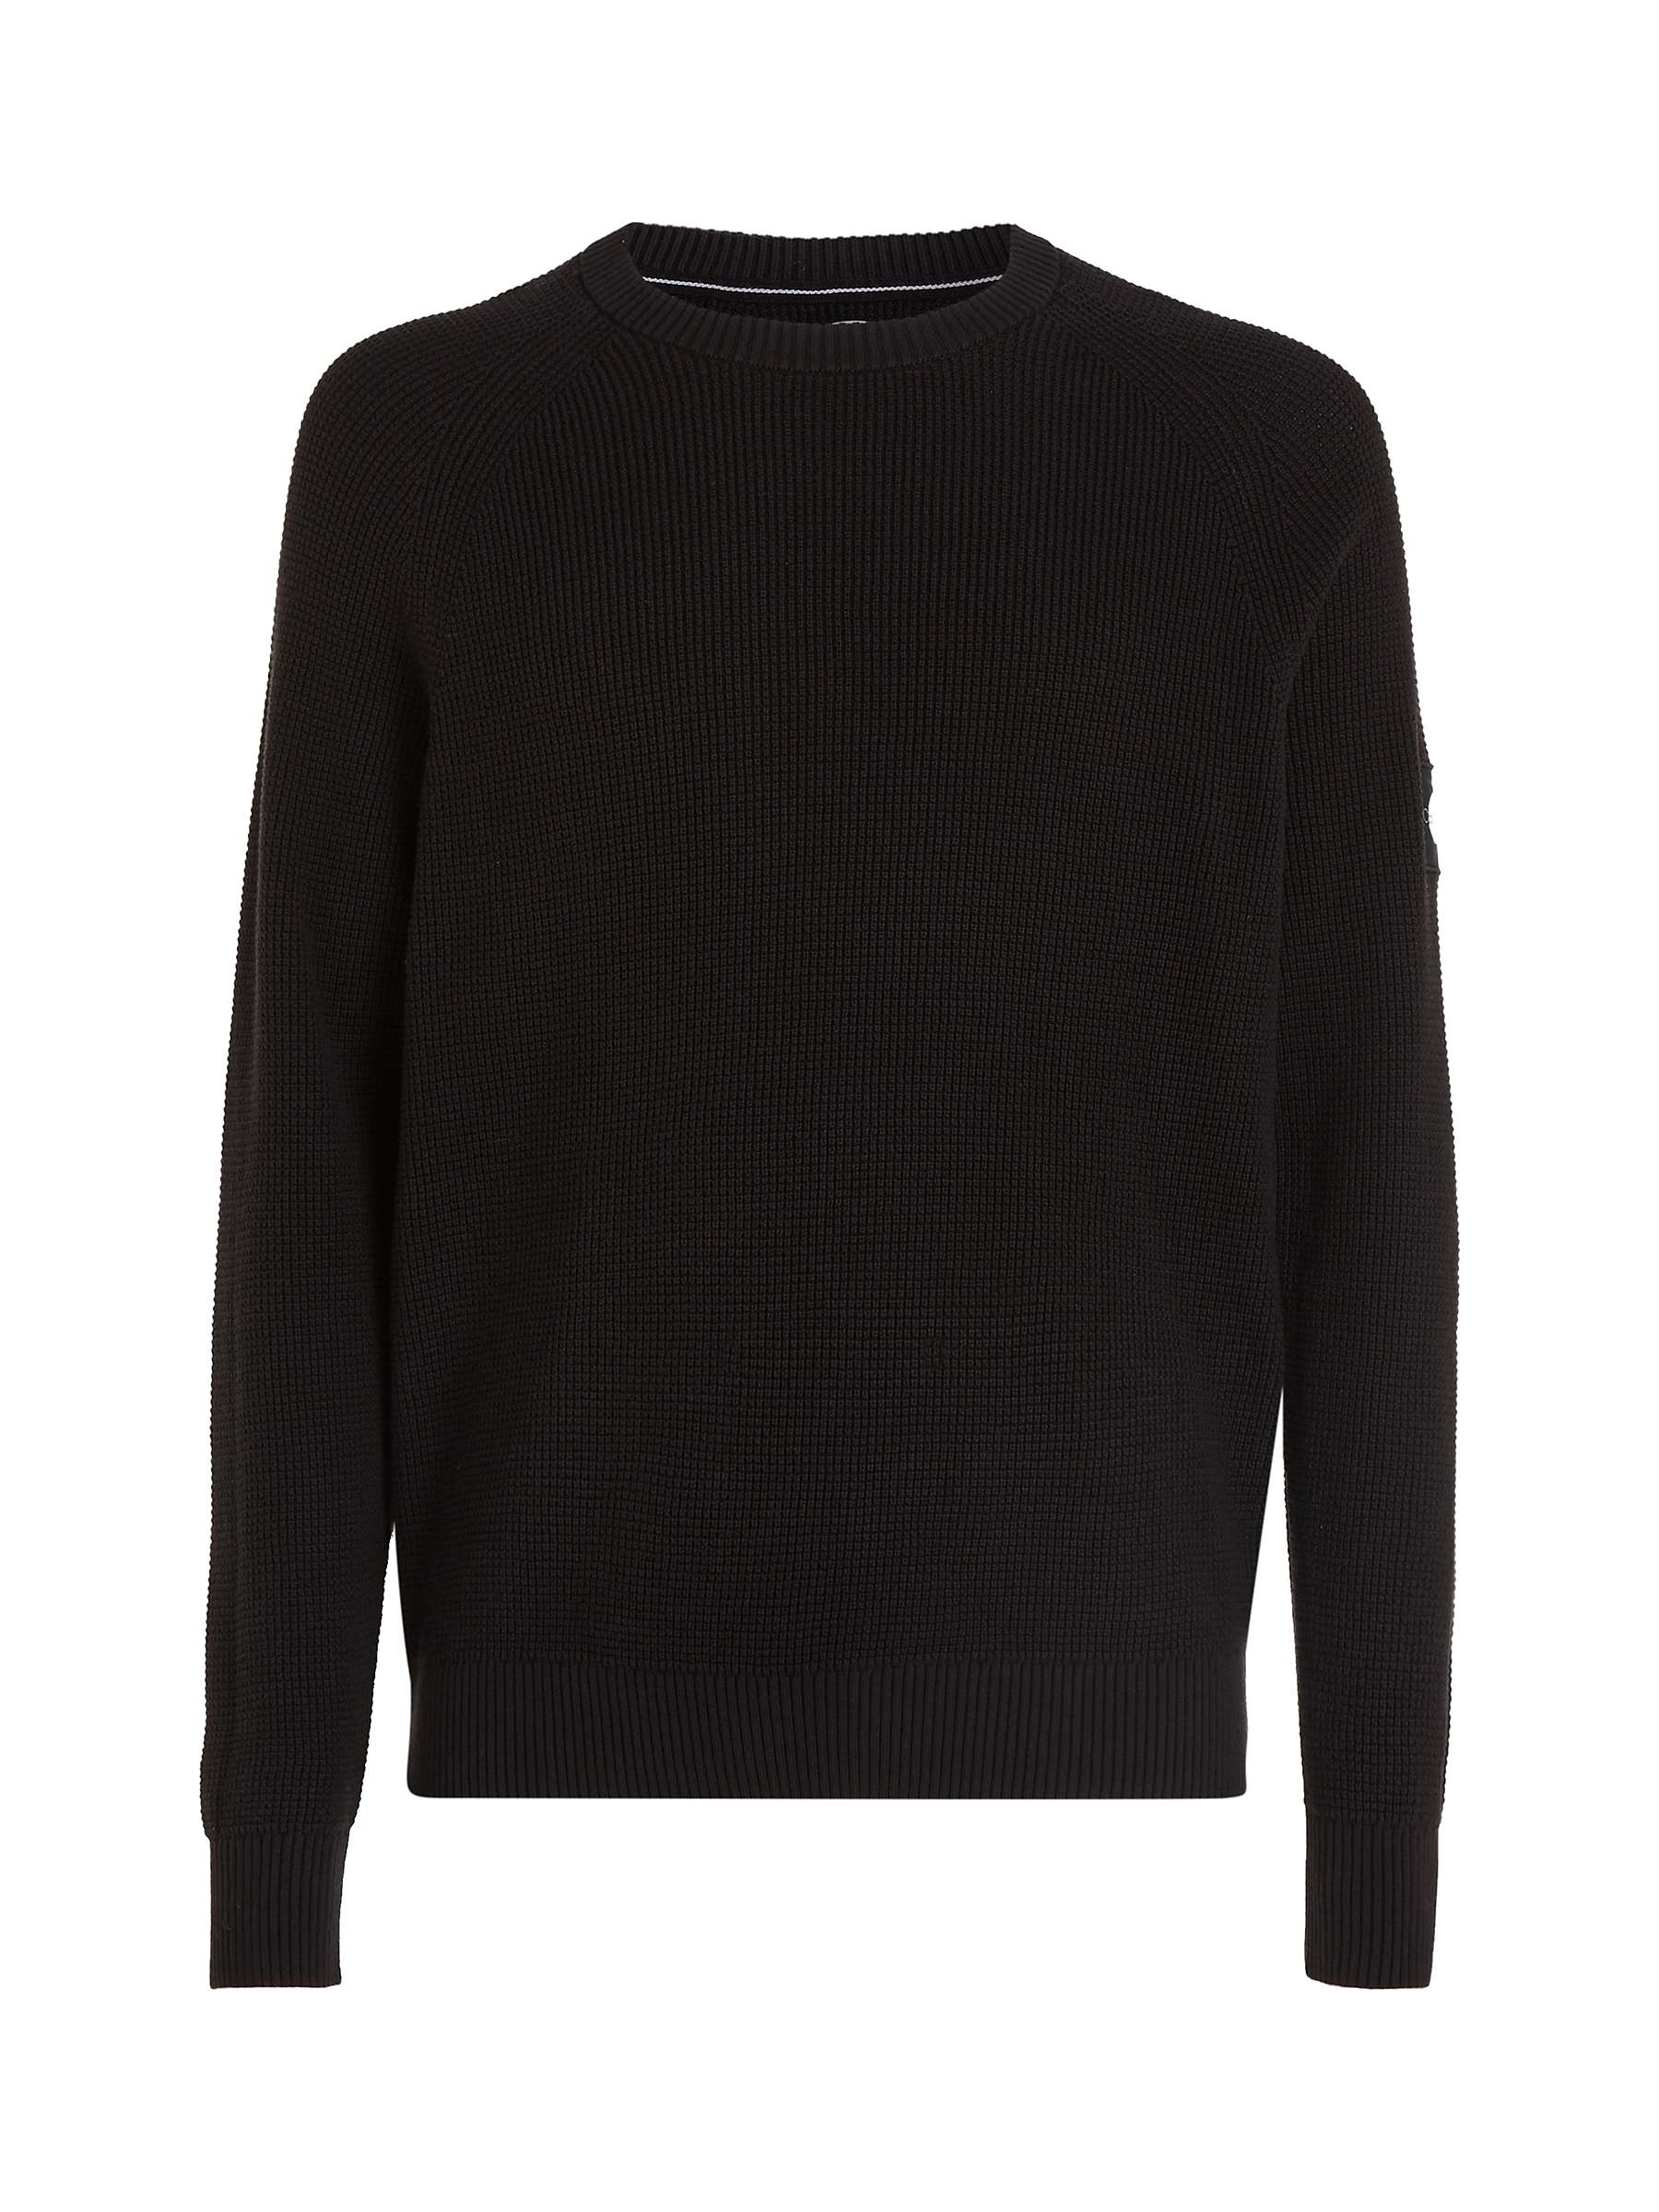 Calvin Klein Badge Logo Easy Sweater, Ck Black at John Lewis & Partners